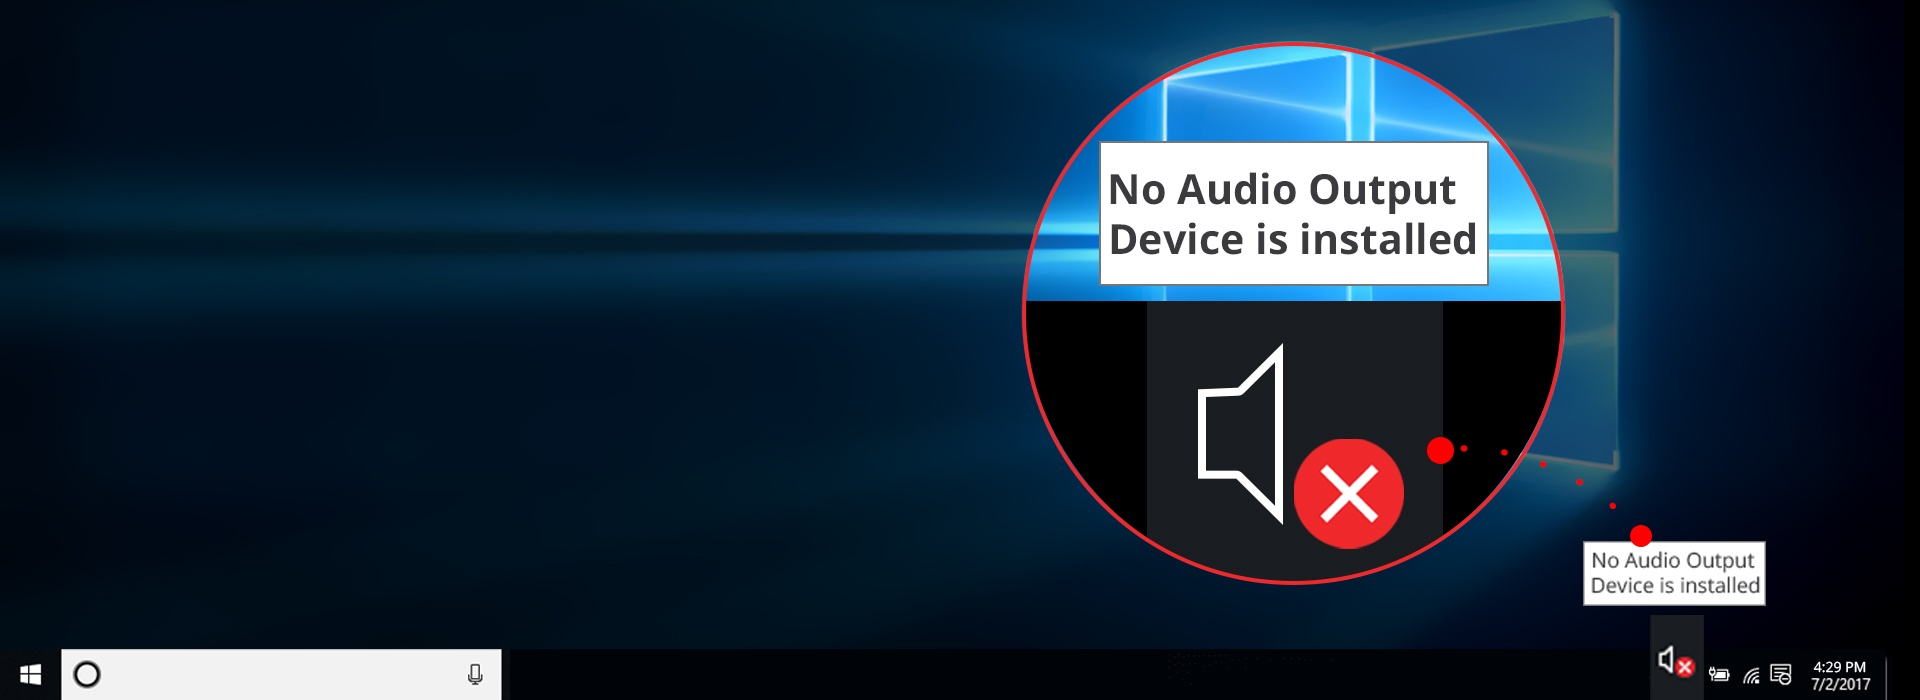 nessun dispositivo di uscita audio è stabilito windows 7 asus